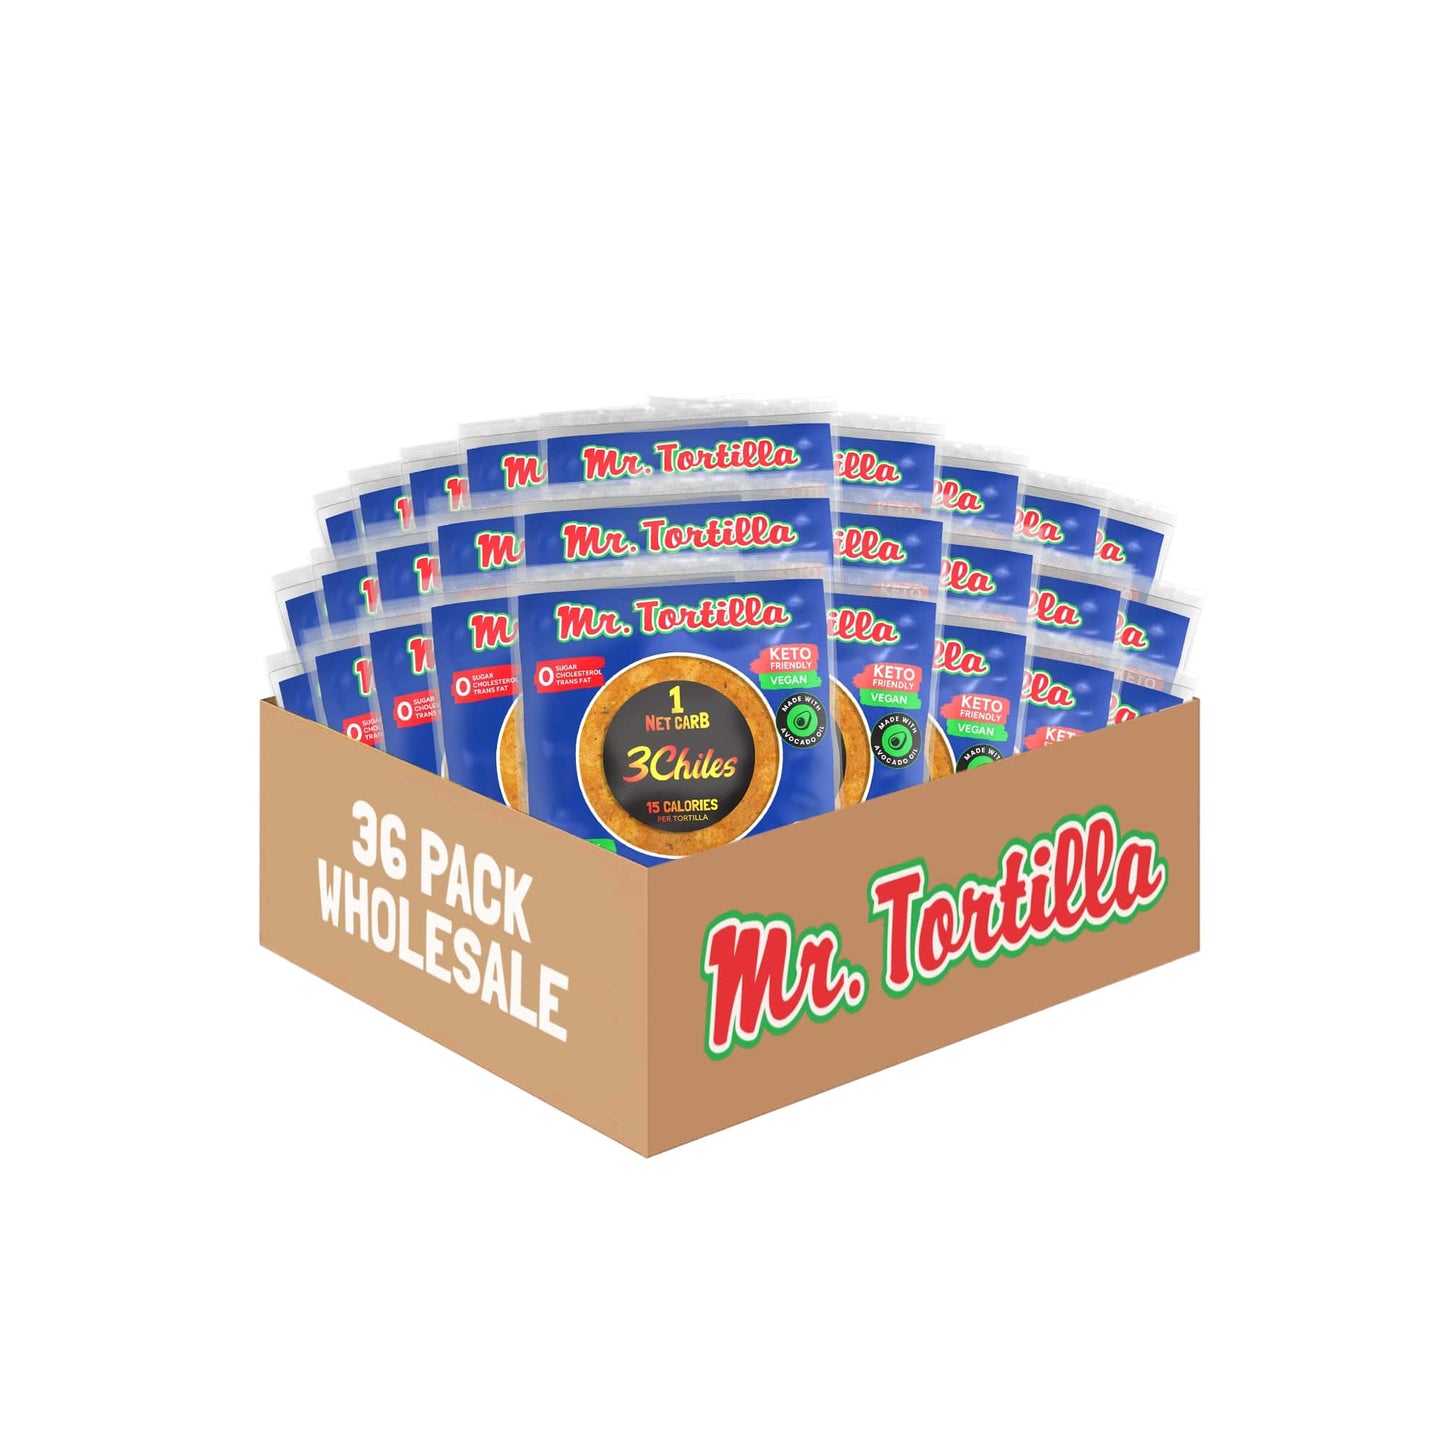 Wholesale 1 Net Carb Tortilla (36 Count)